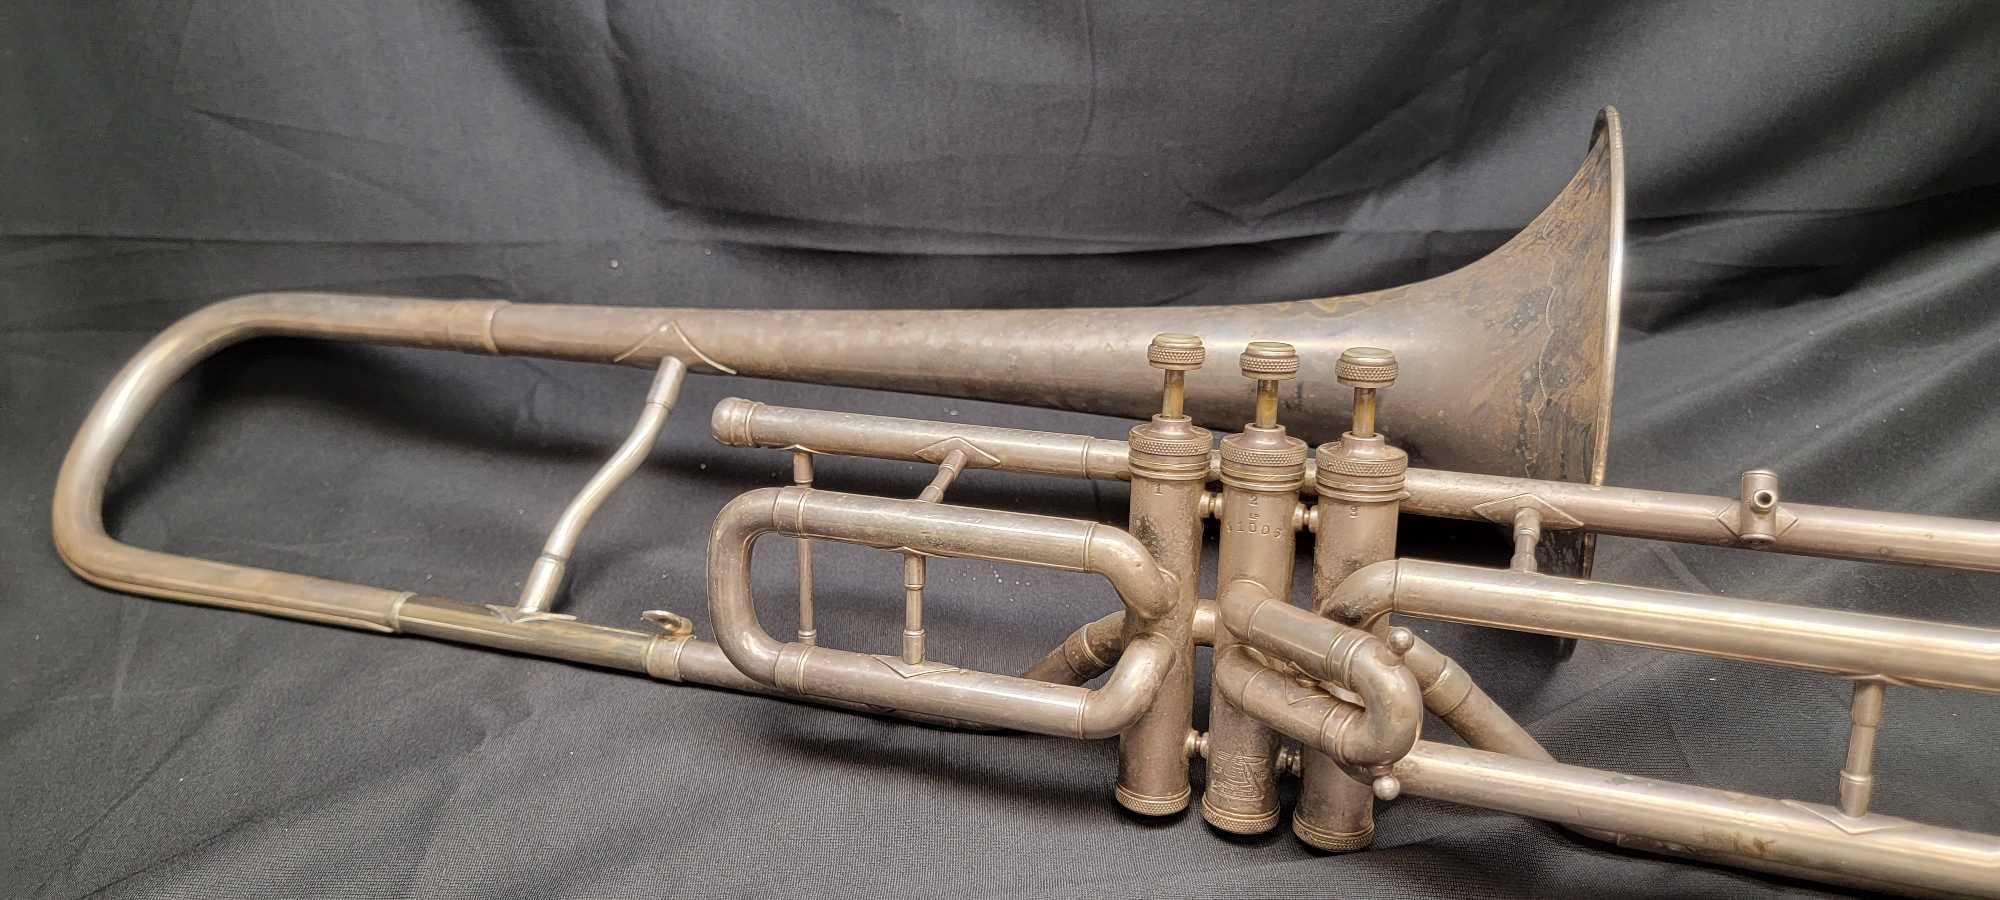 1932 Buescher True Tone LP 2 Trumpet w/ Original Case